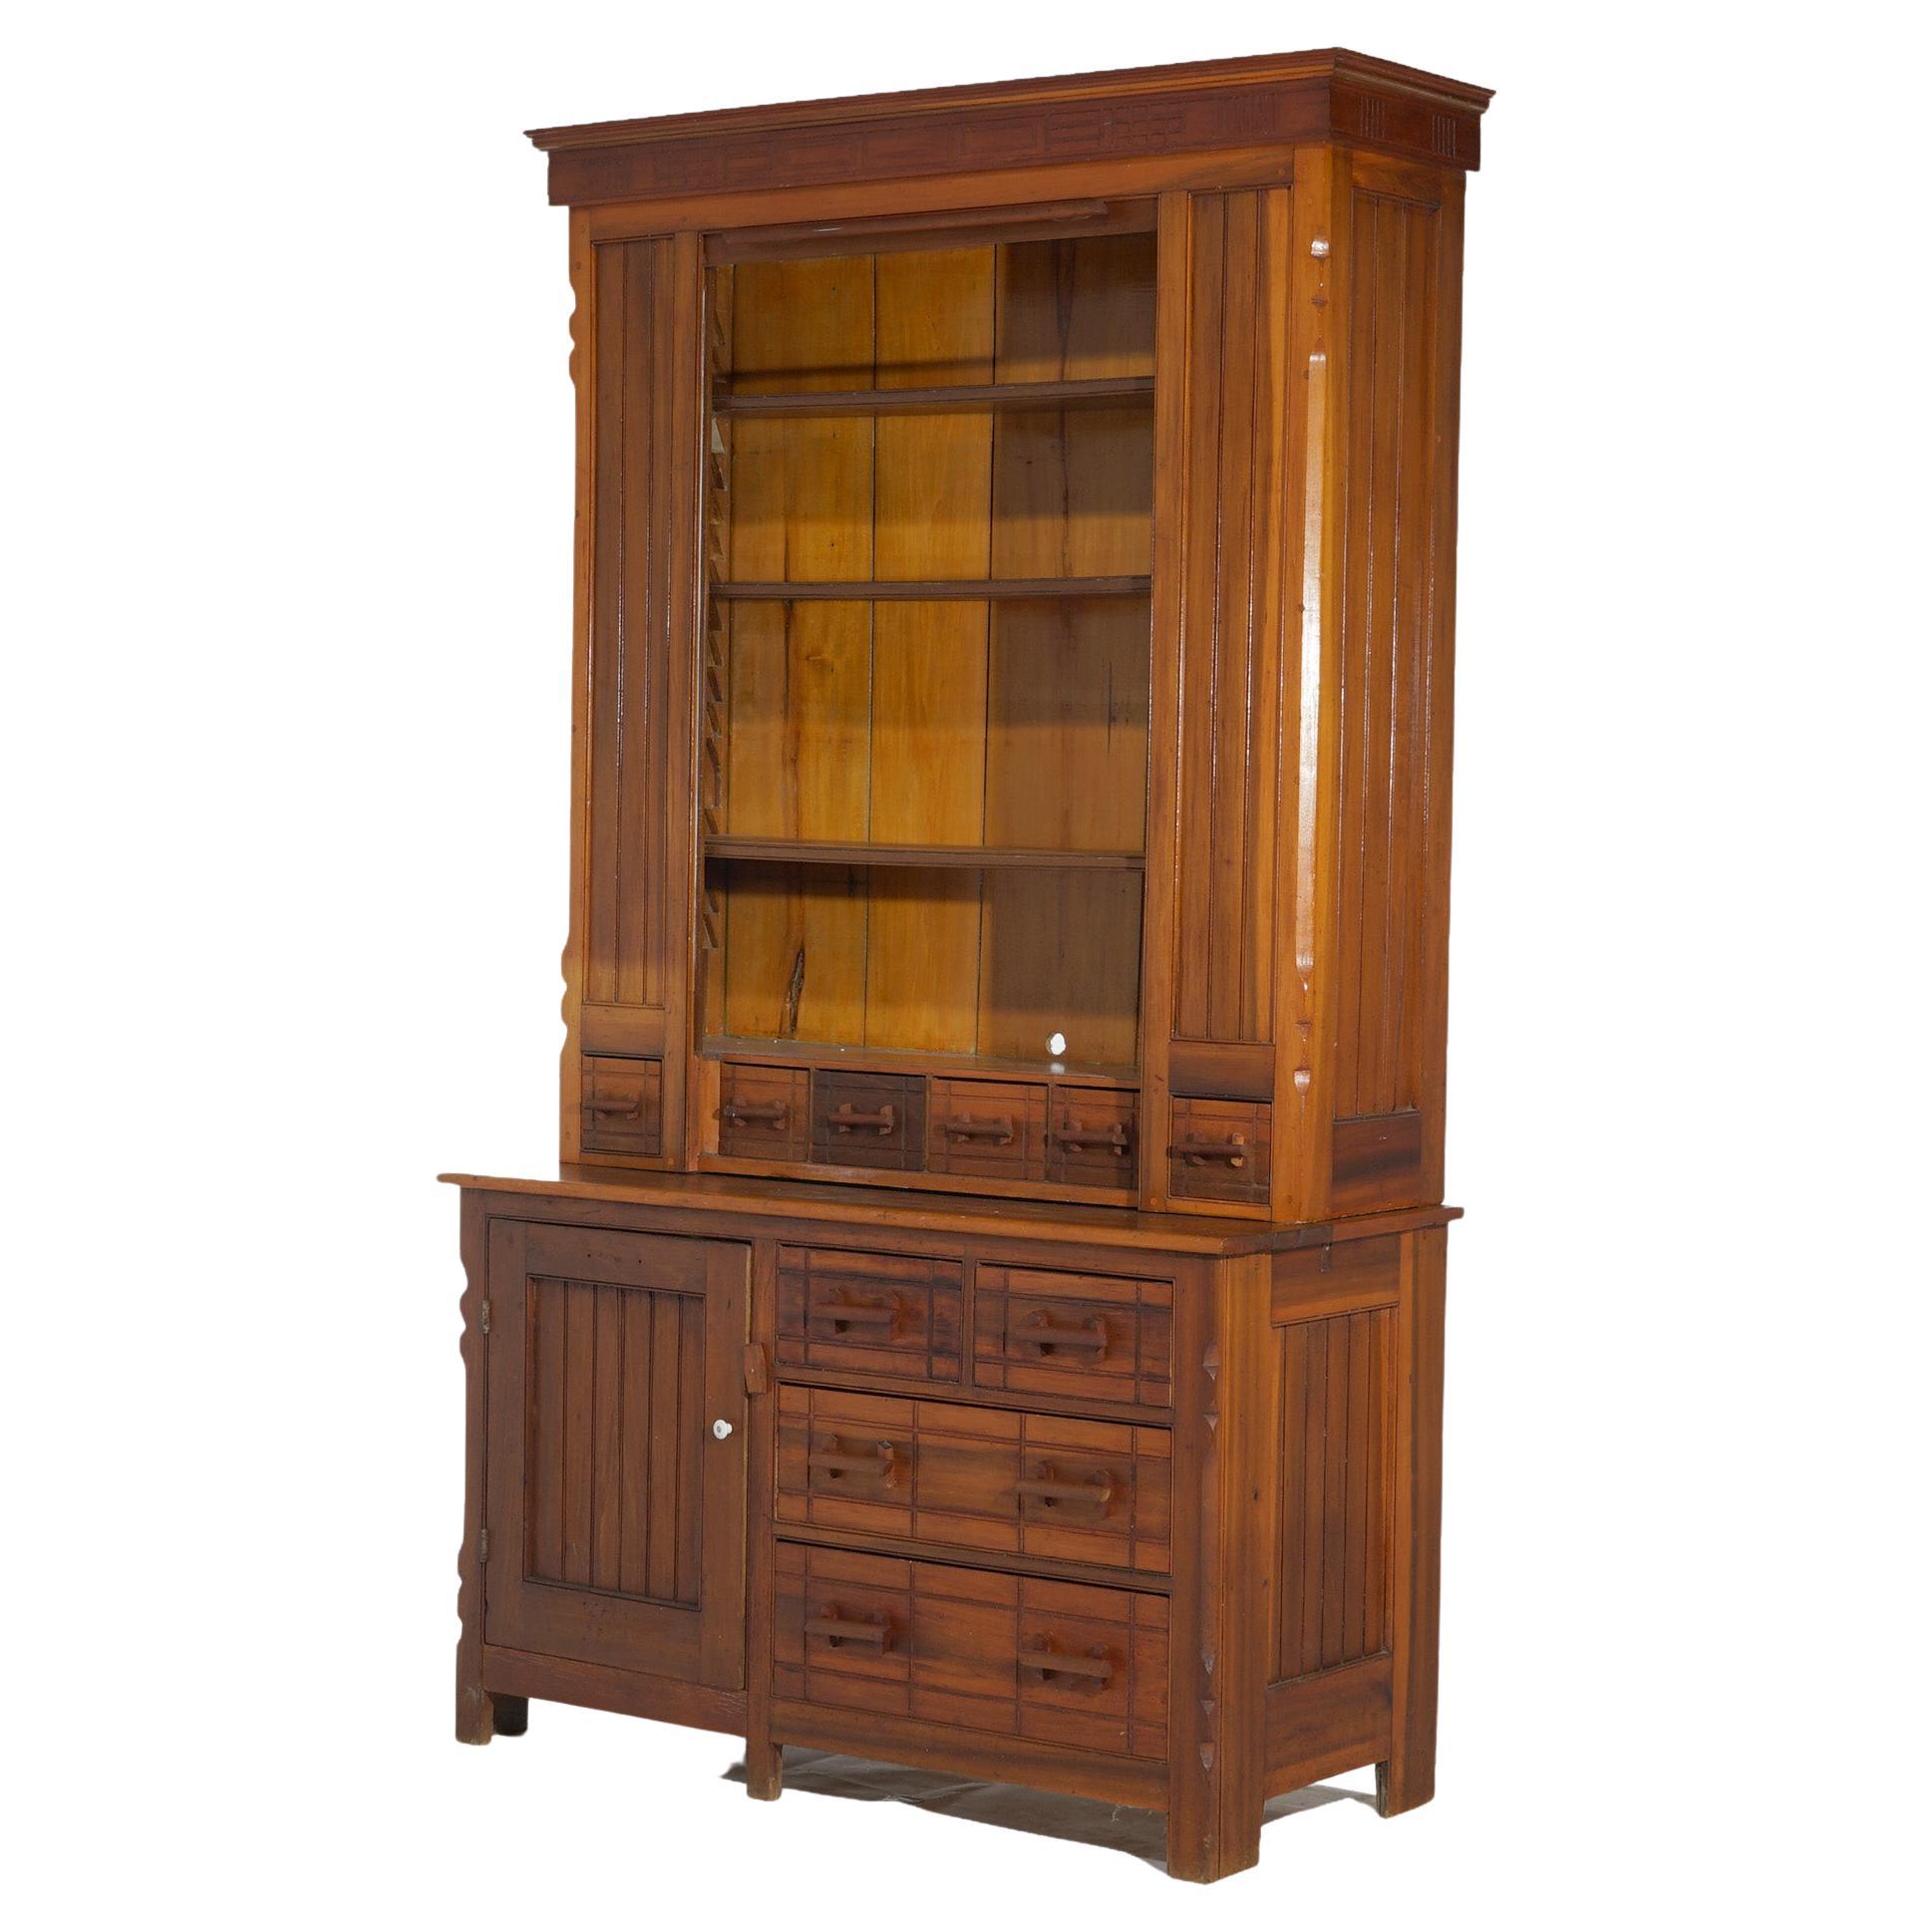 Une armoire de campagne antique surdimensionnée offre un espace de rangement supérieur.  coffret à rideau ouvrant sur un intérieur à étagères, coffret inférieur avec tiroirs et armoire, vers 1900

Dimensions - 87,25 